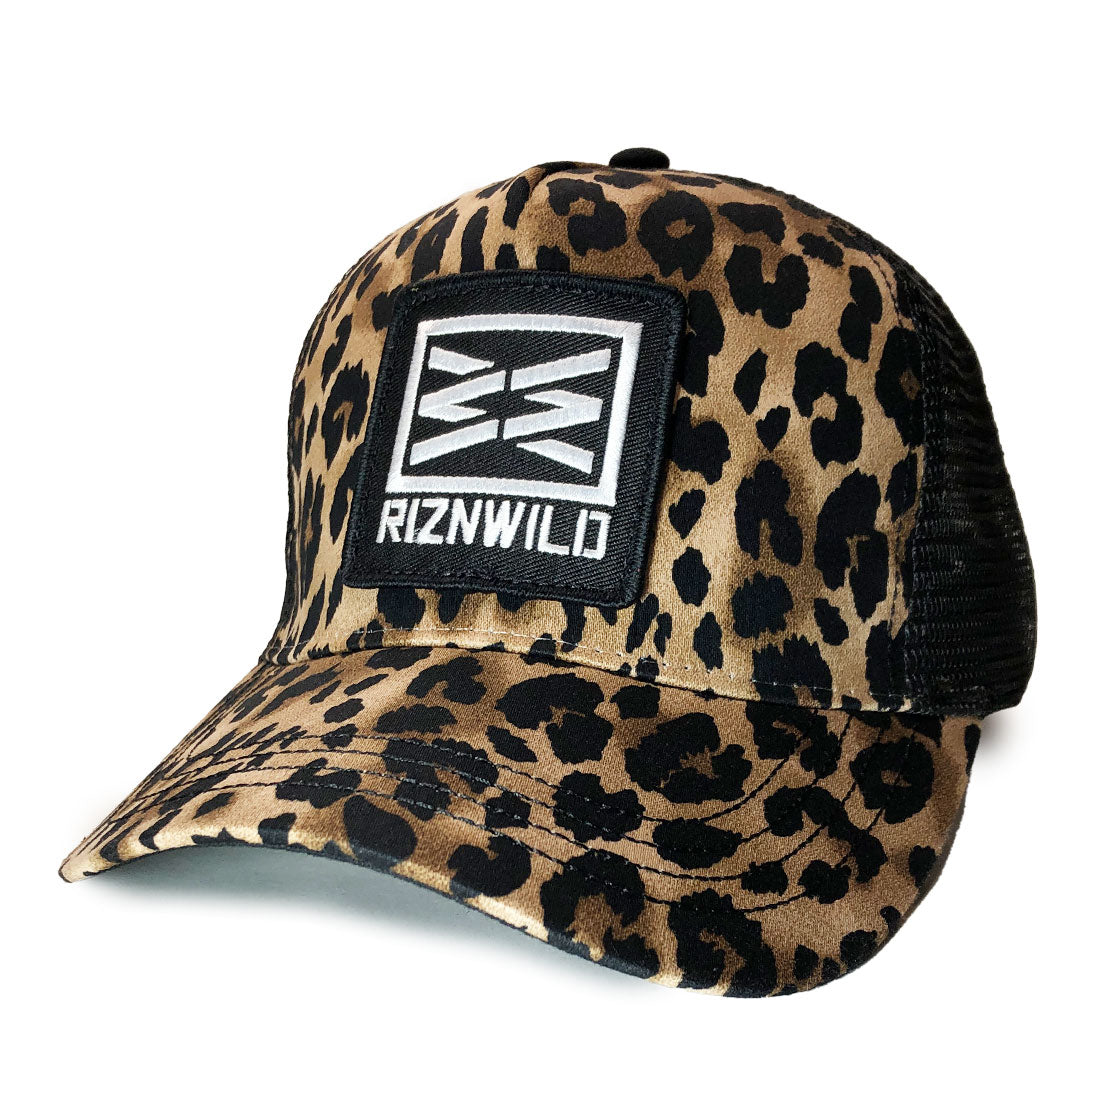 RIZNWILD leopard curved bill trucker hat